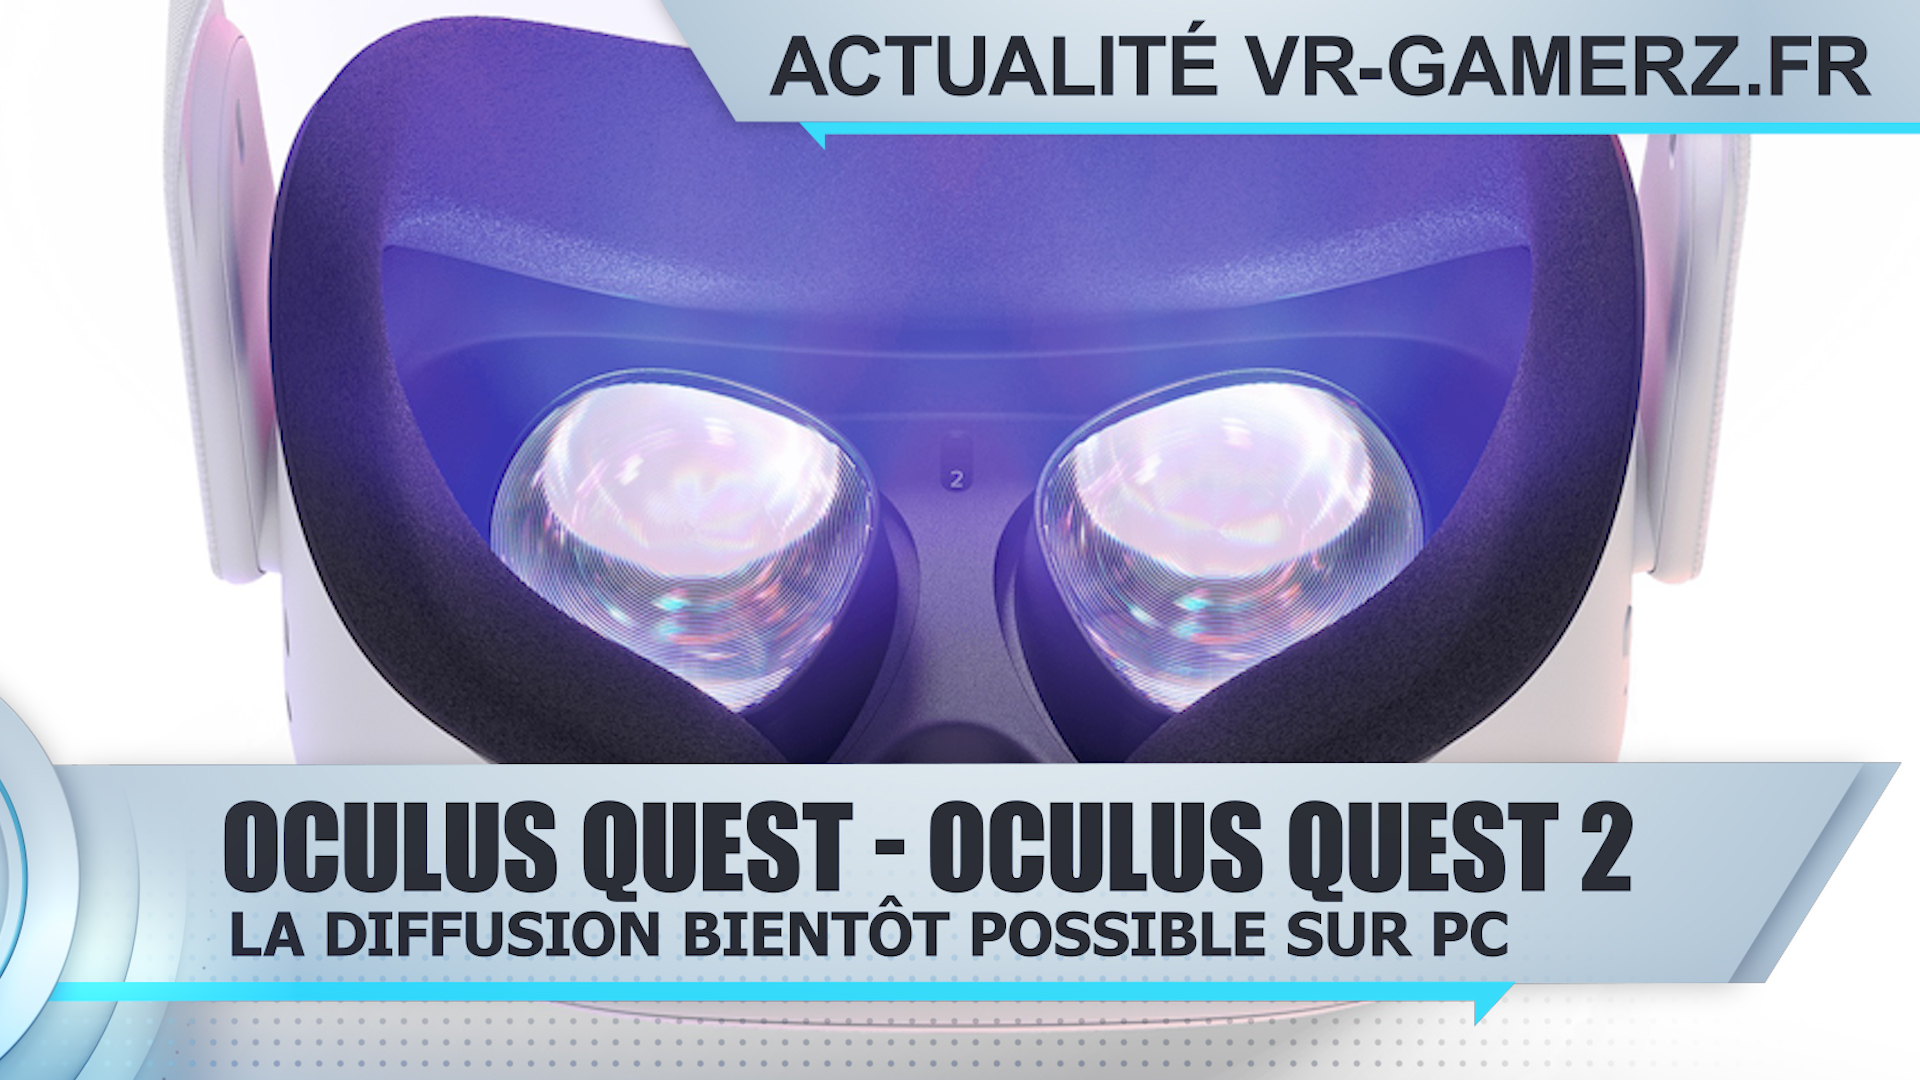 L’Oculus quest pourra bientôt diffuser sur un PC !